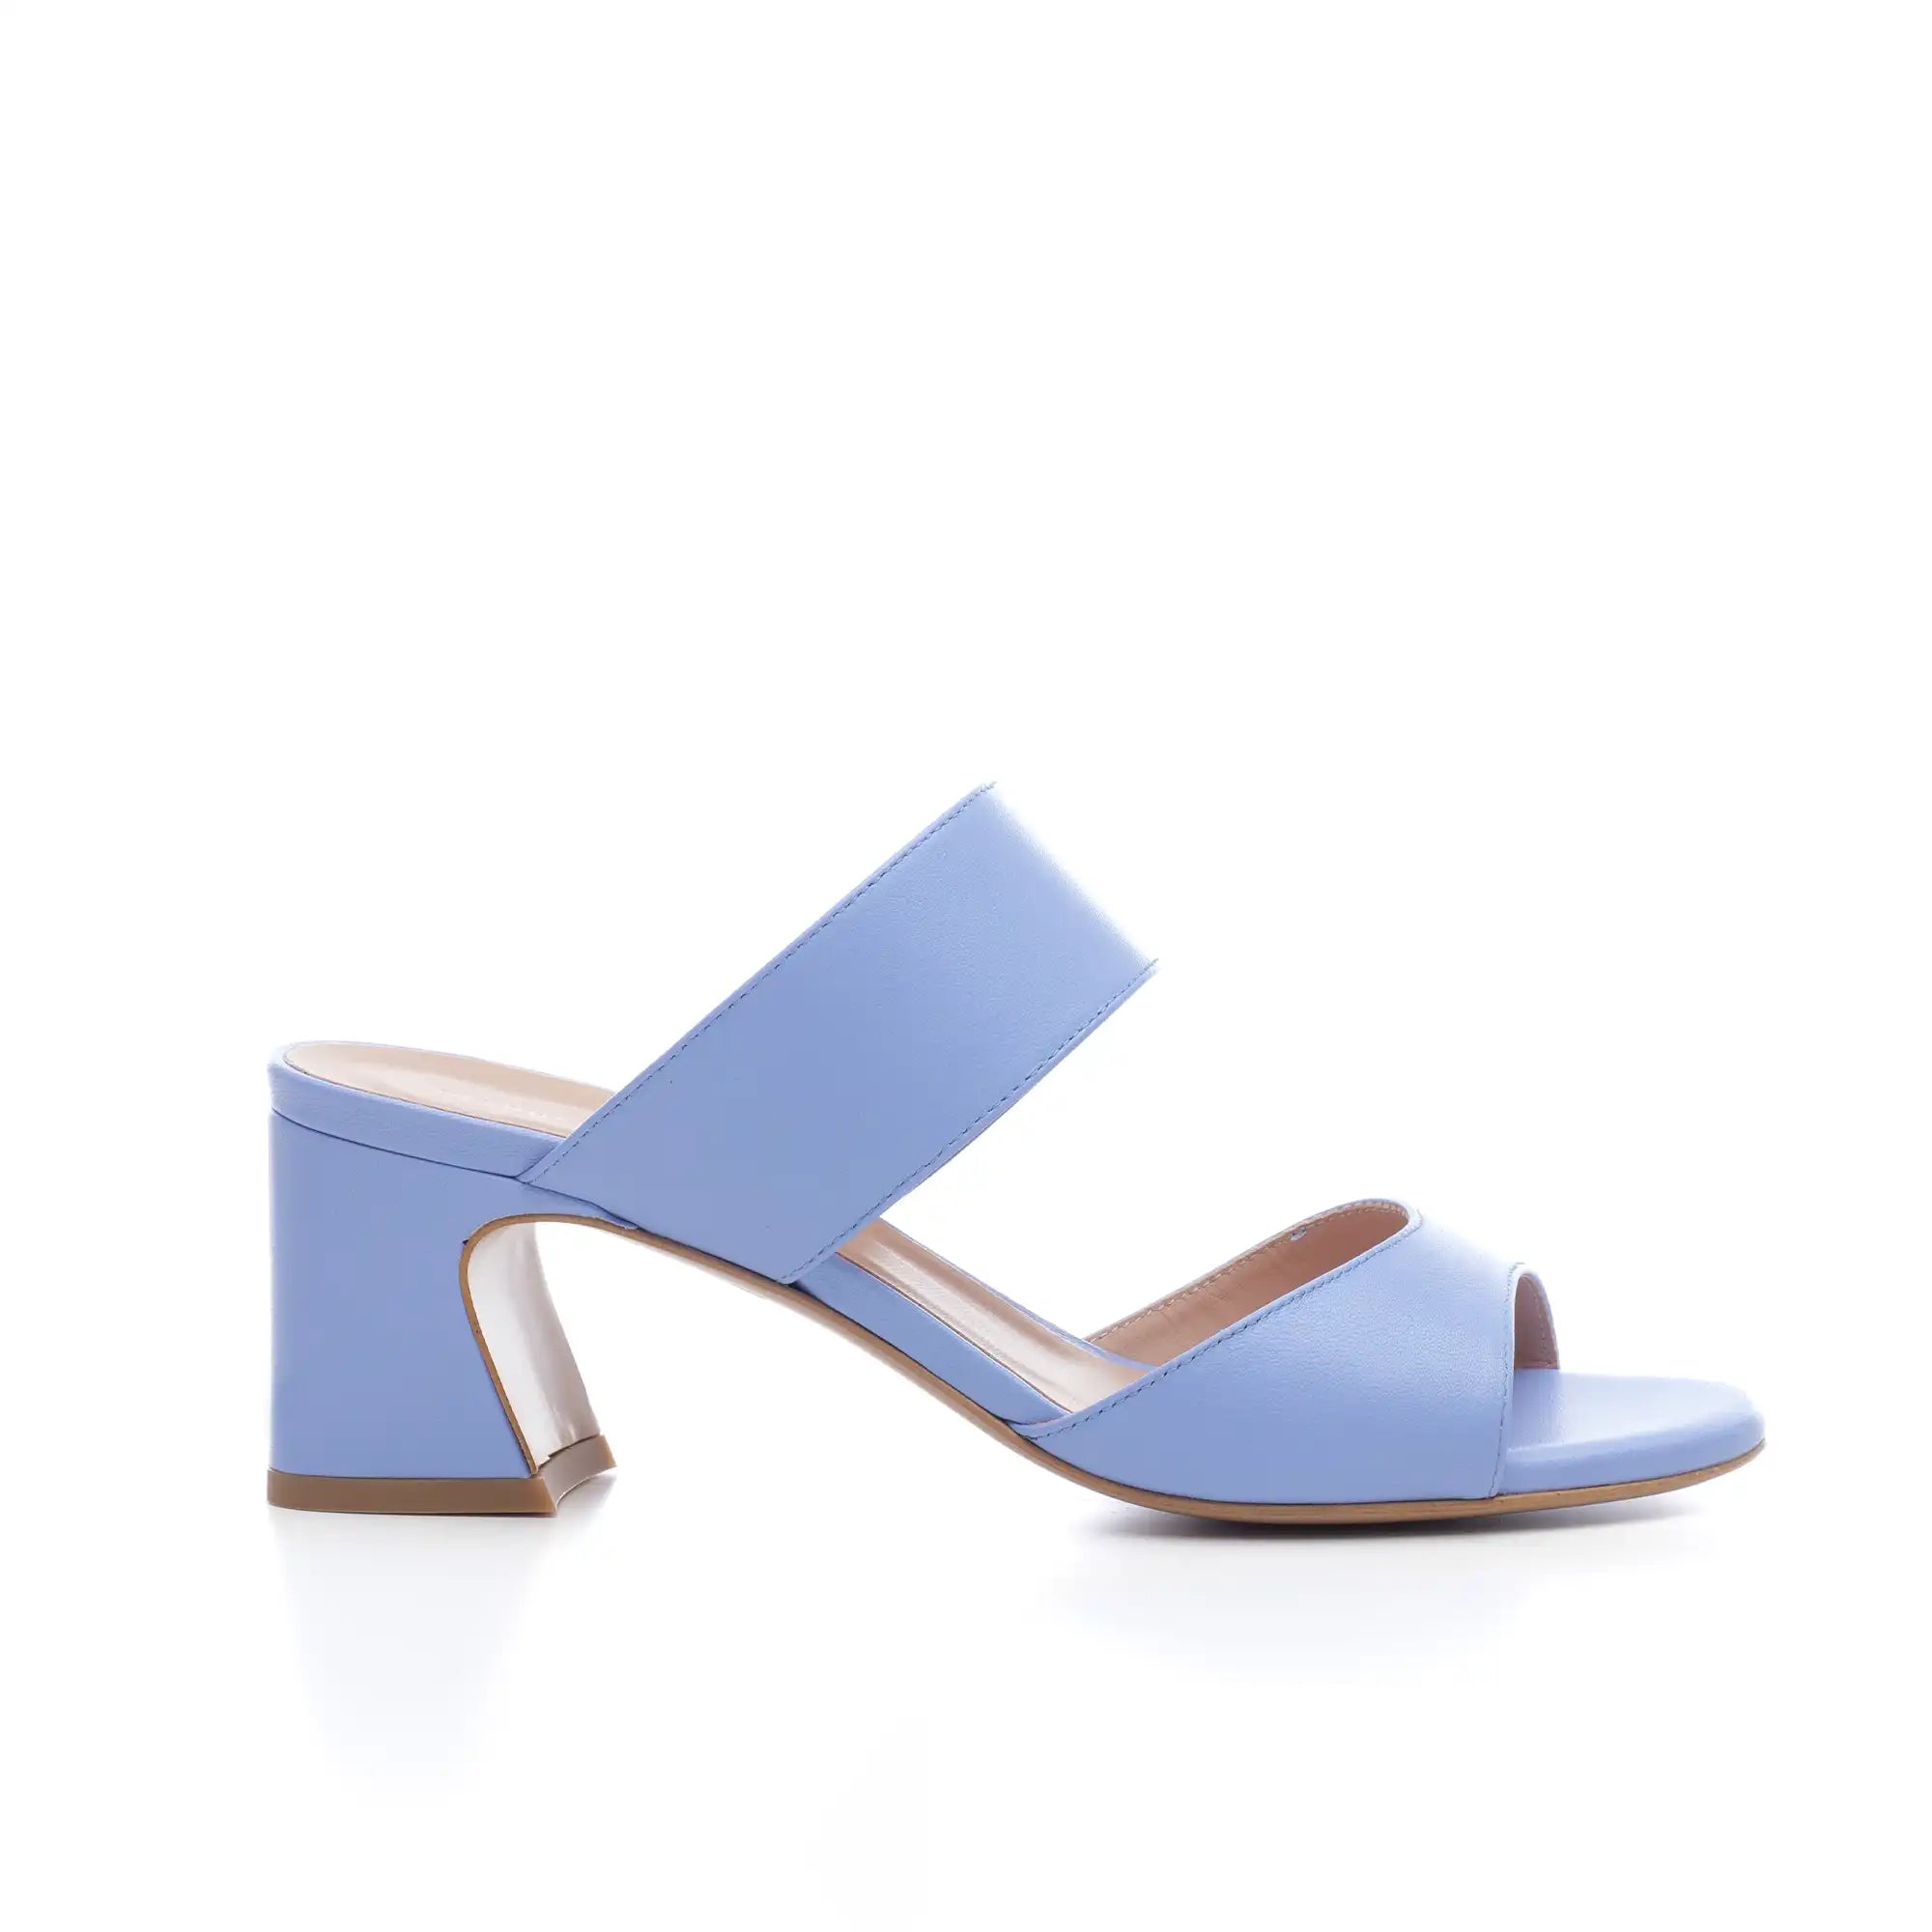 Sandalo Elle mules tacco basso largo con fascia su collo piede in pelle azzurro polvere